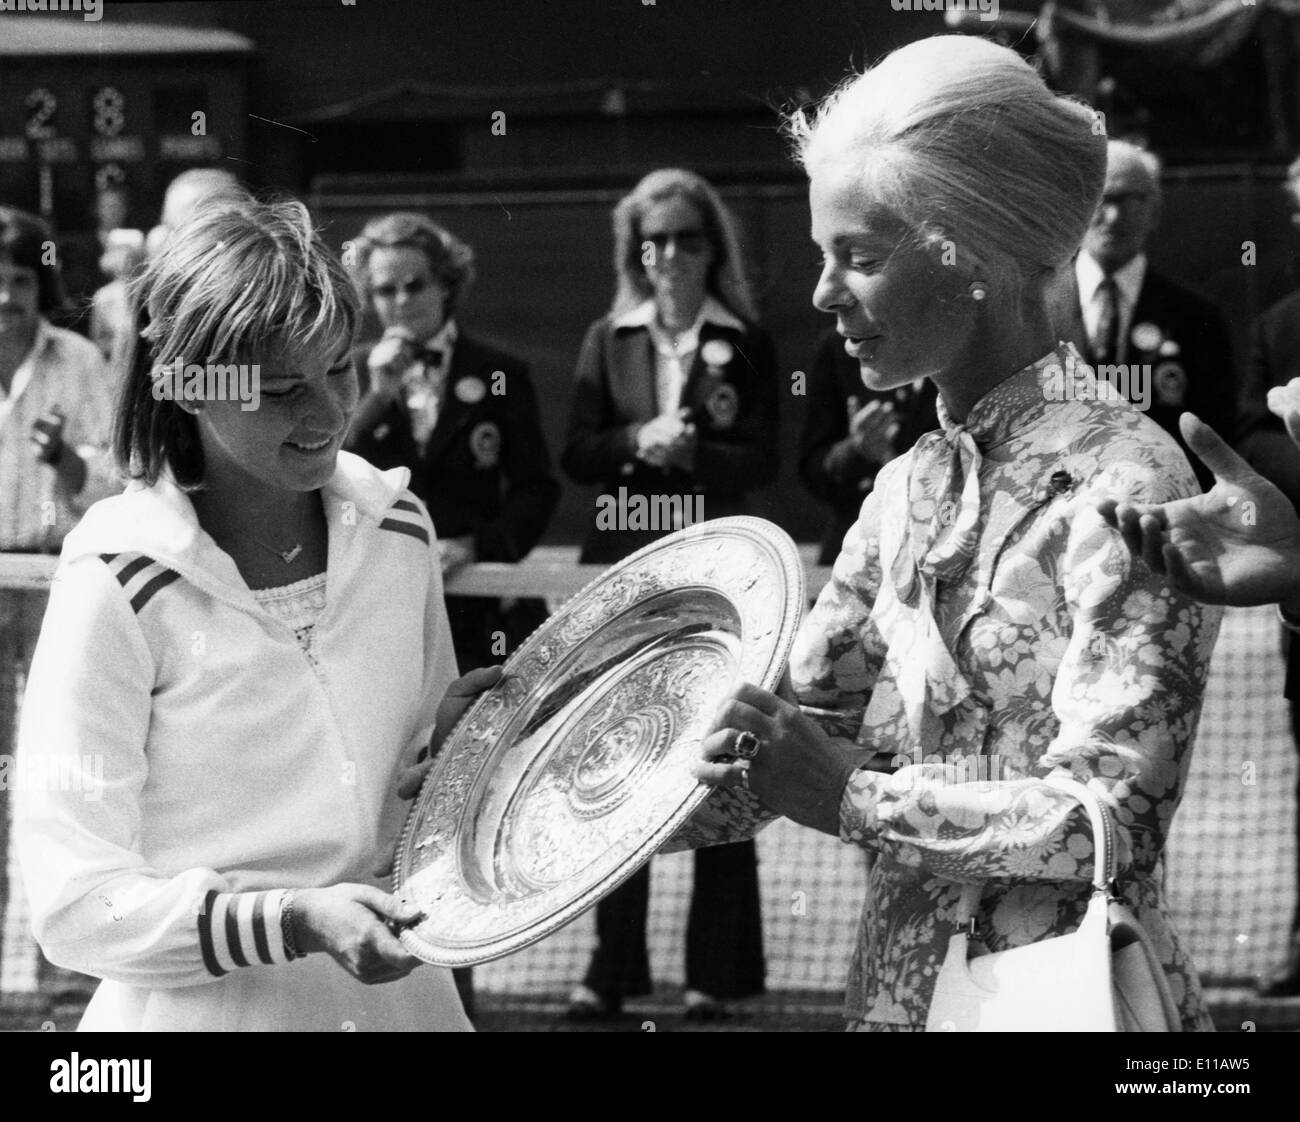 Jul 02, 1976; London, England, UK; Tennis star CHRIS EVERT receiving her winning trophy from the DUCHESS of Kent at Wimbledon.. Stock Photo